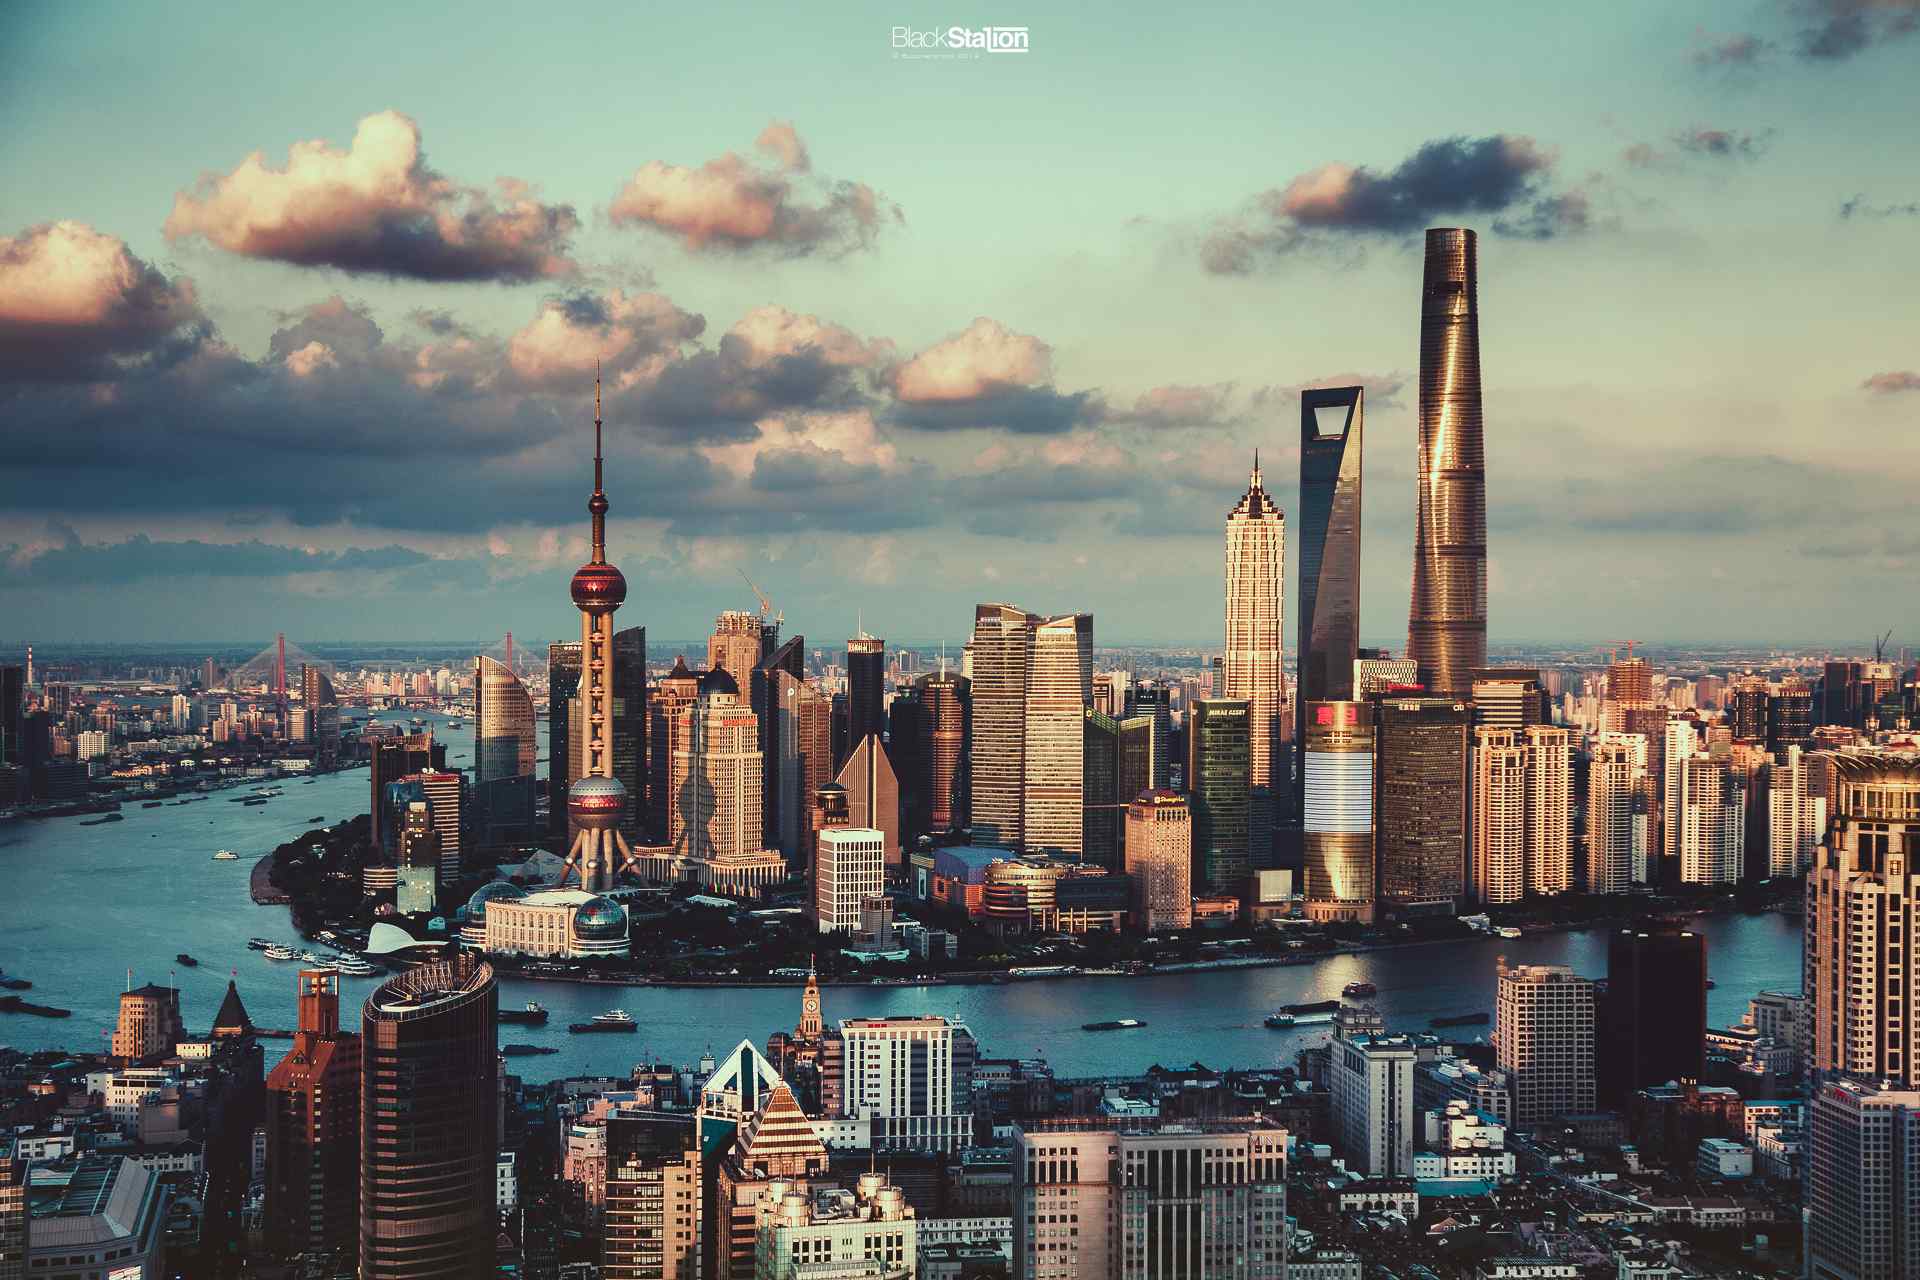 魔都上海唯美黄浦江风景图片桌面壁纸